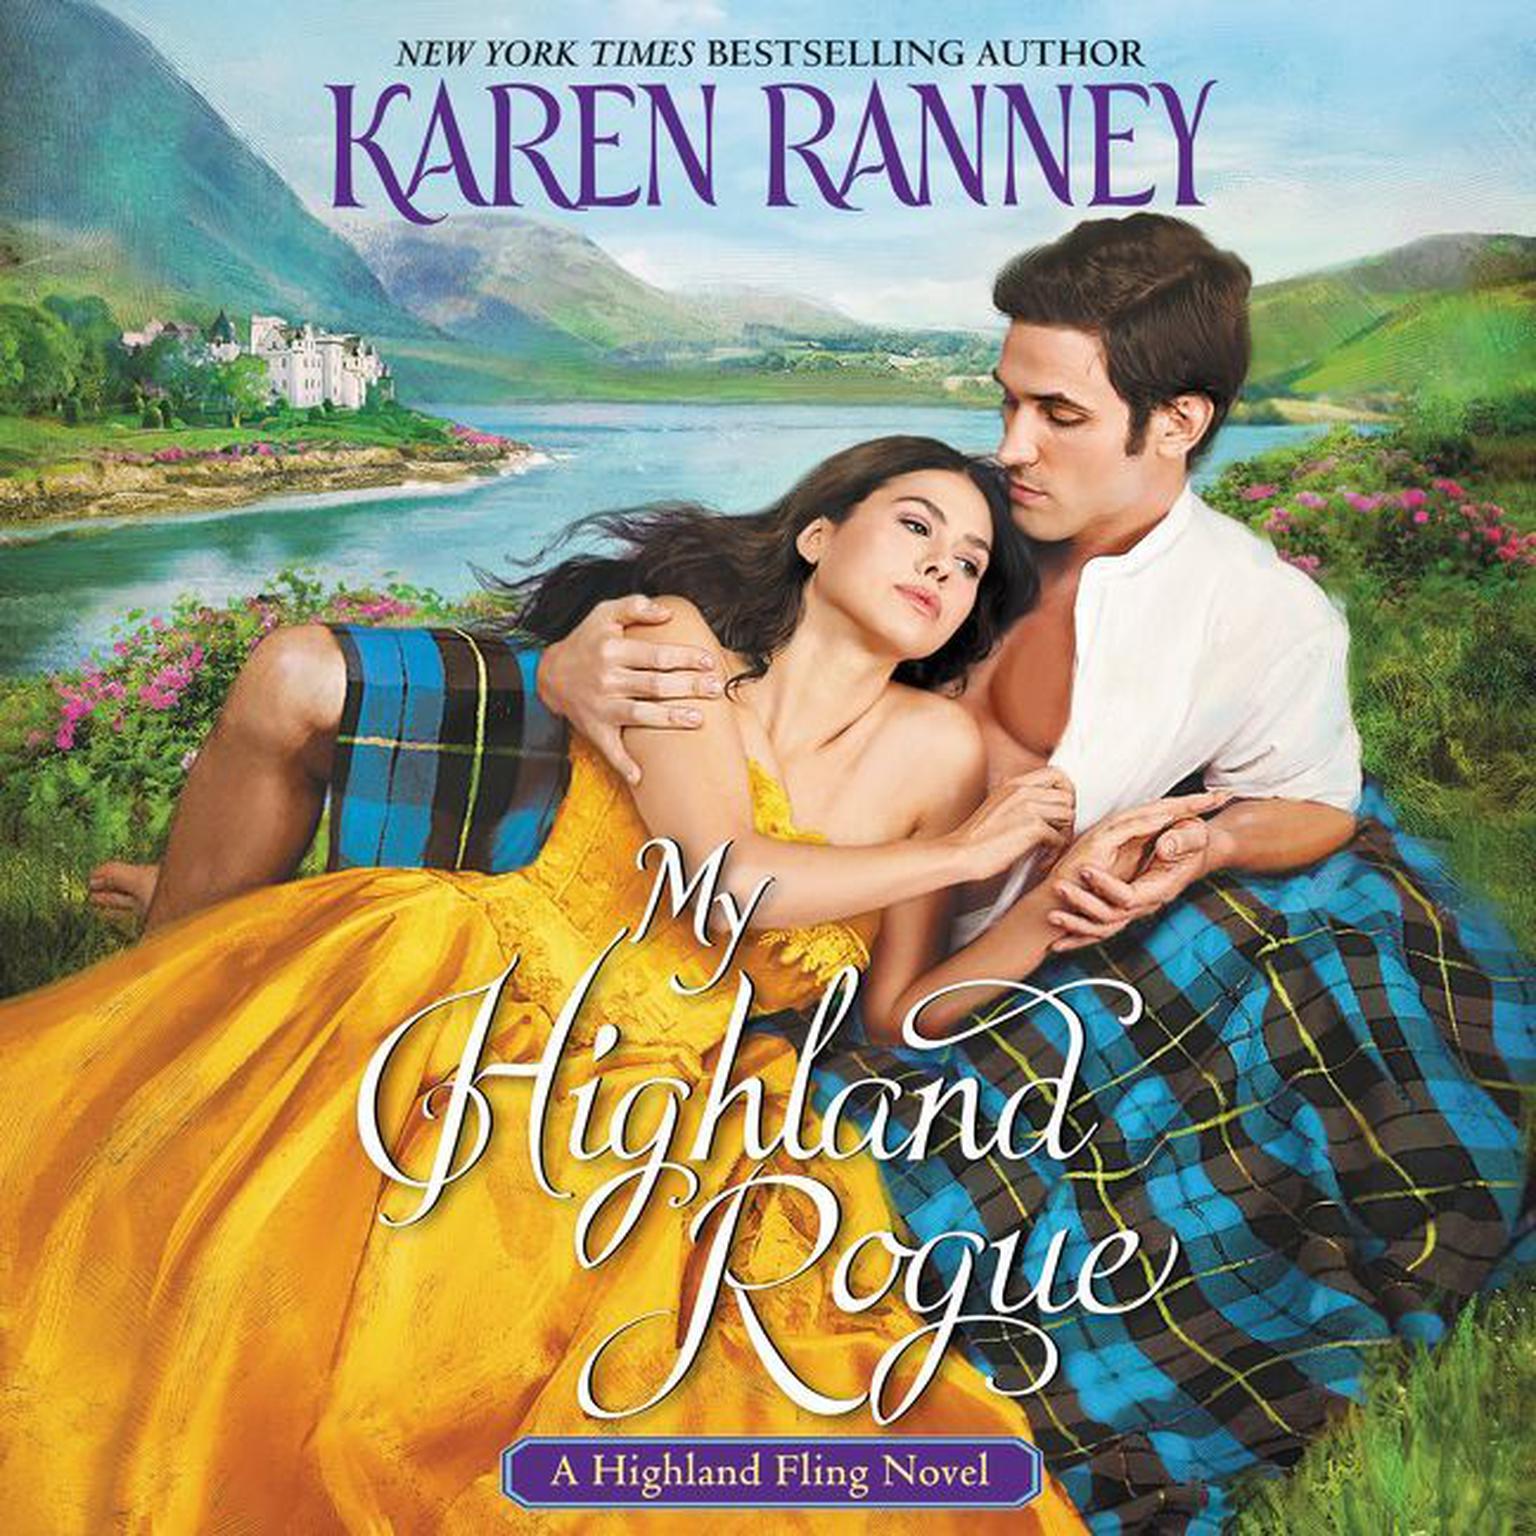 My Highland Rogue: A Highland Fling Novel Audiobook, by Karen Ranney